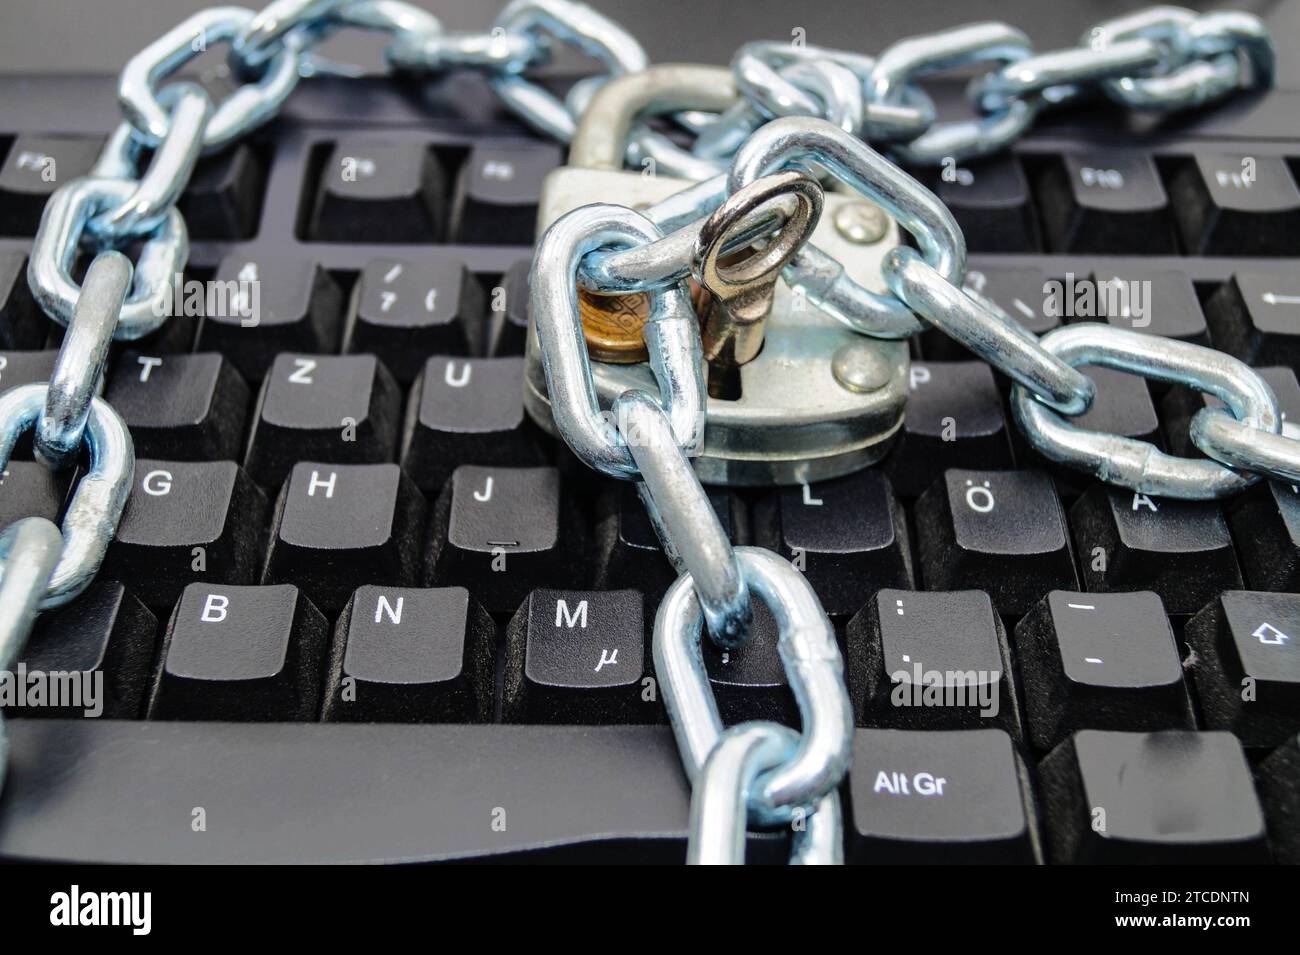 clavier avec chaîne et serrure de sécurité, image de symbole pour la confidentialité des données Banque D'Images